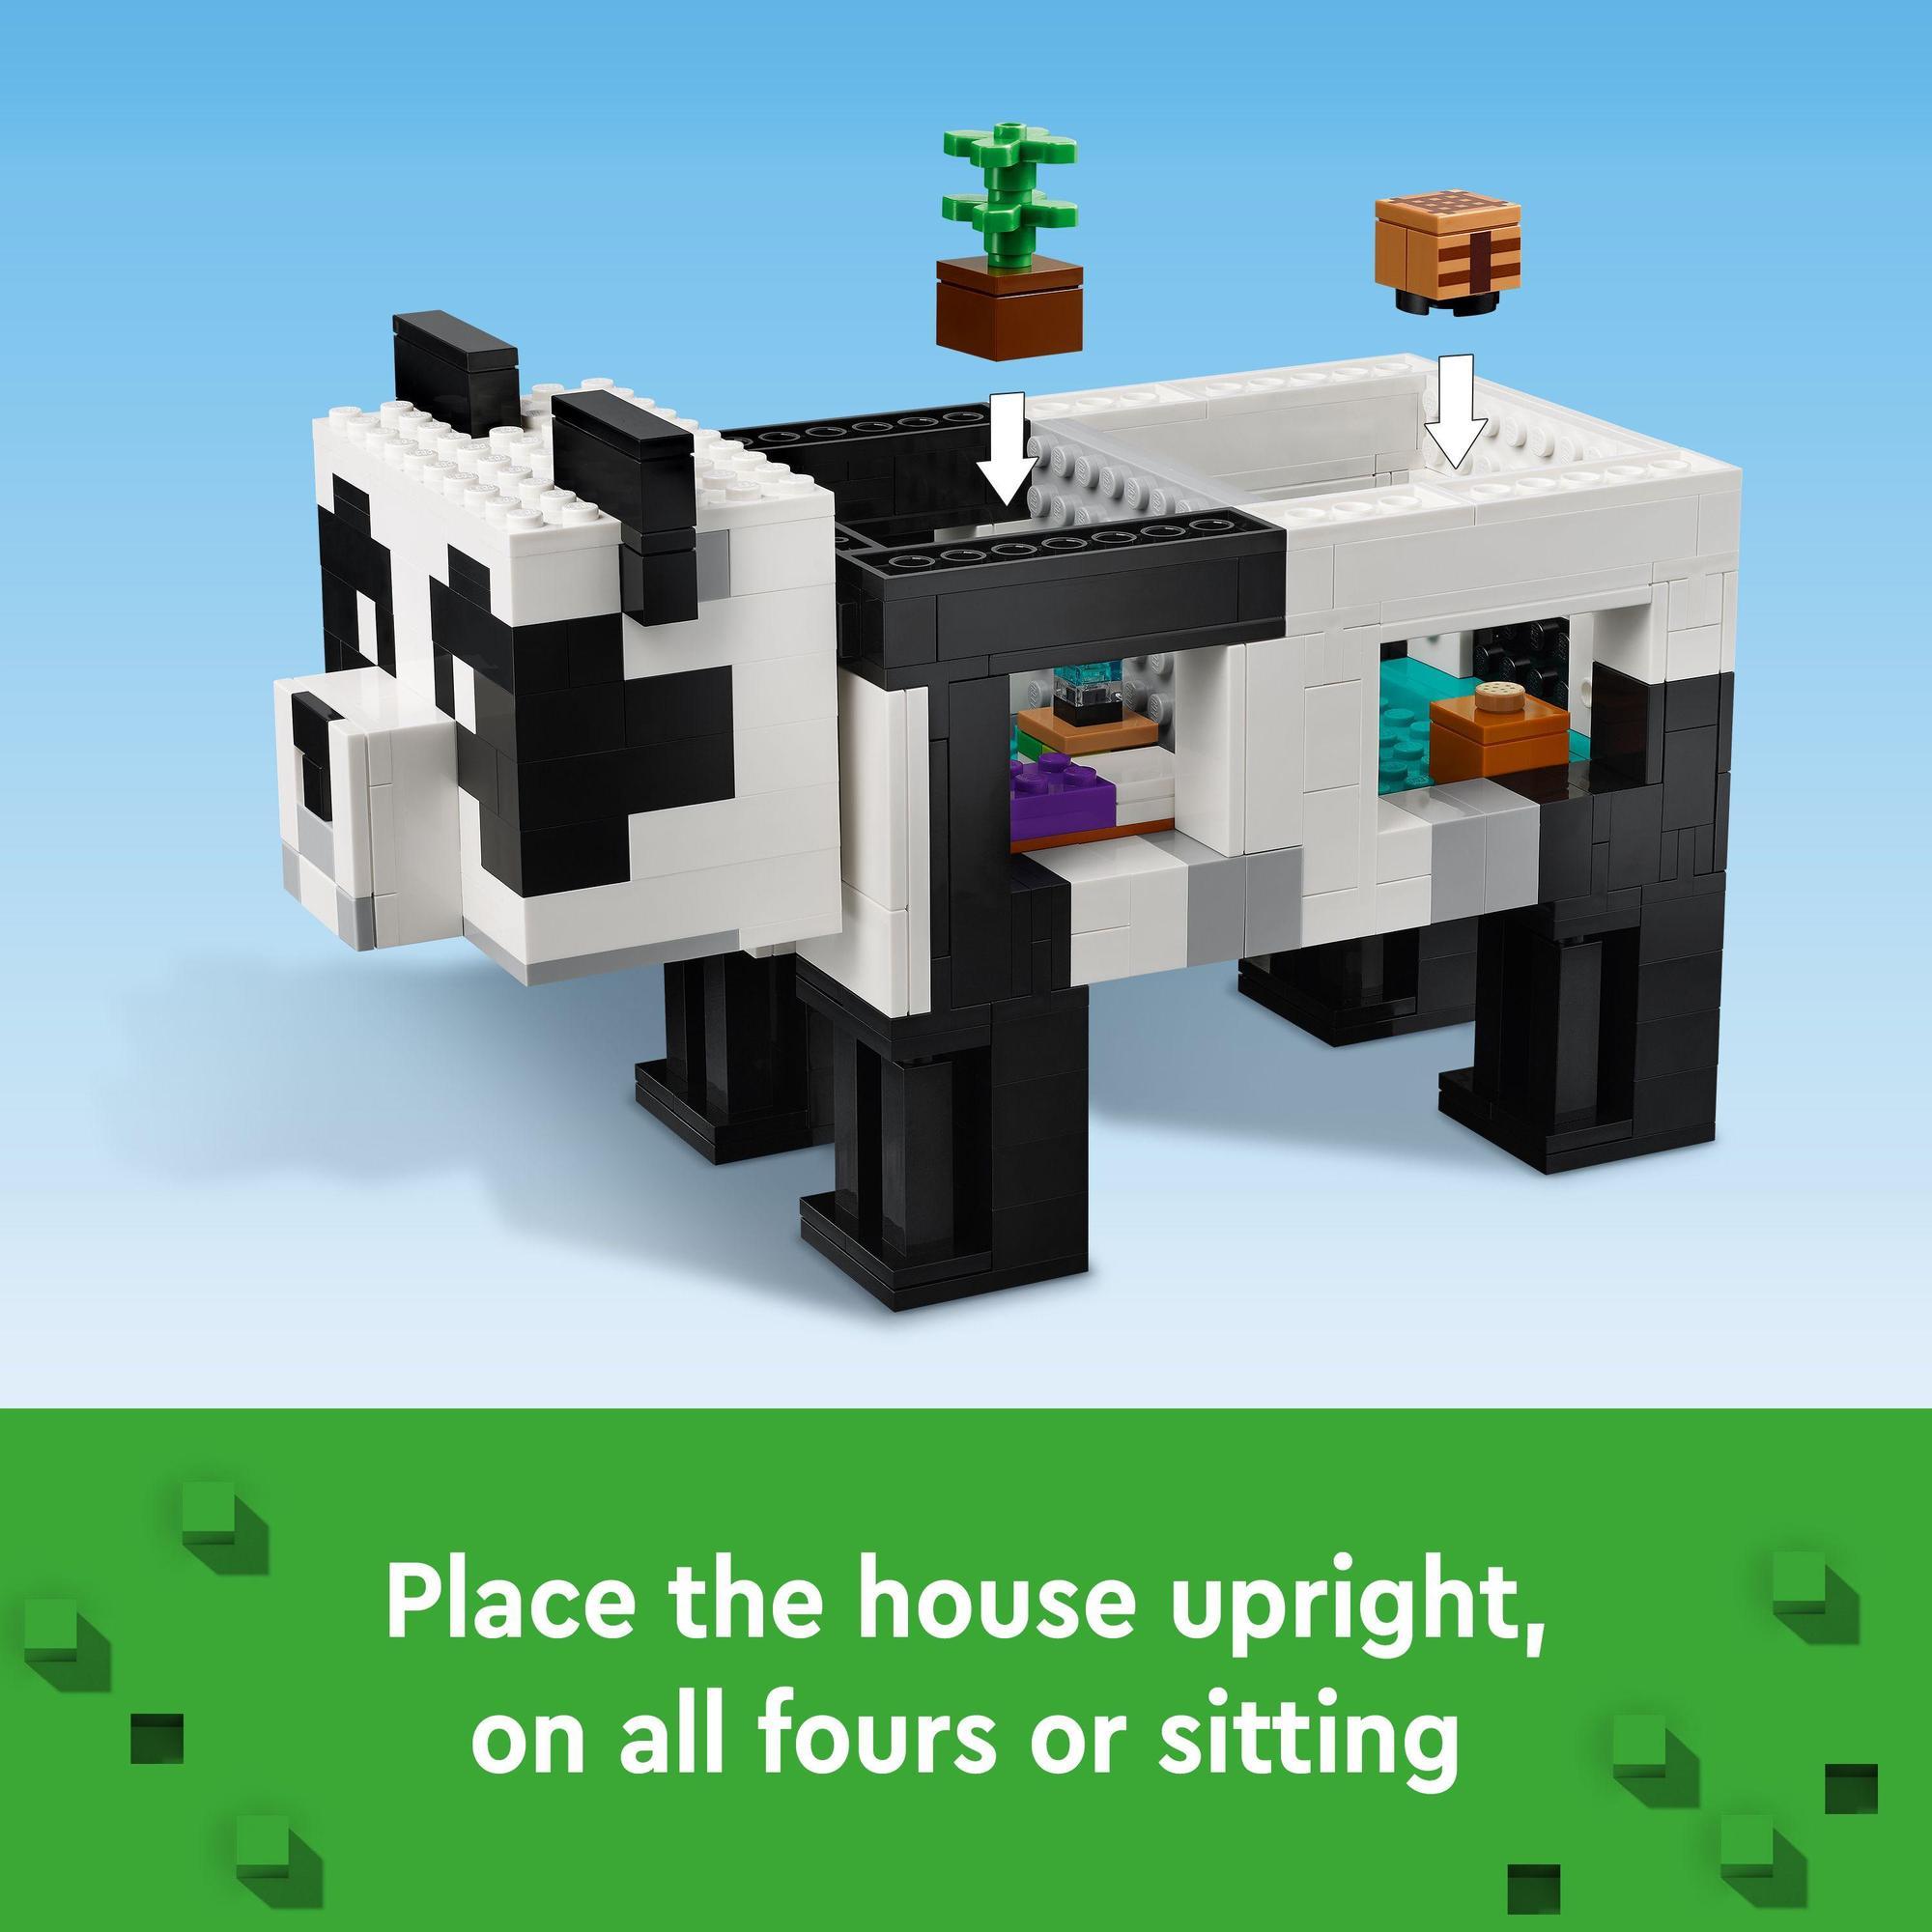 LEGO Minecraft 21245 Ngôi Nhà Gấu Trúc (553 Chi Tiết)